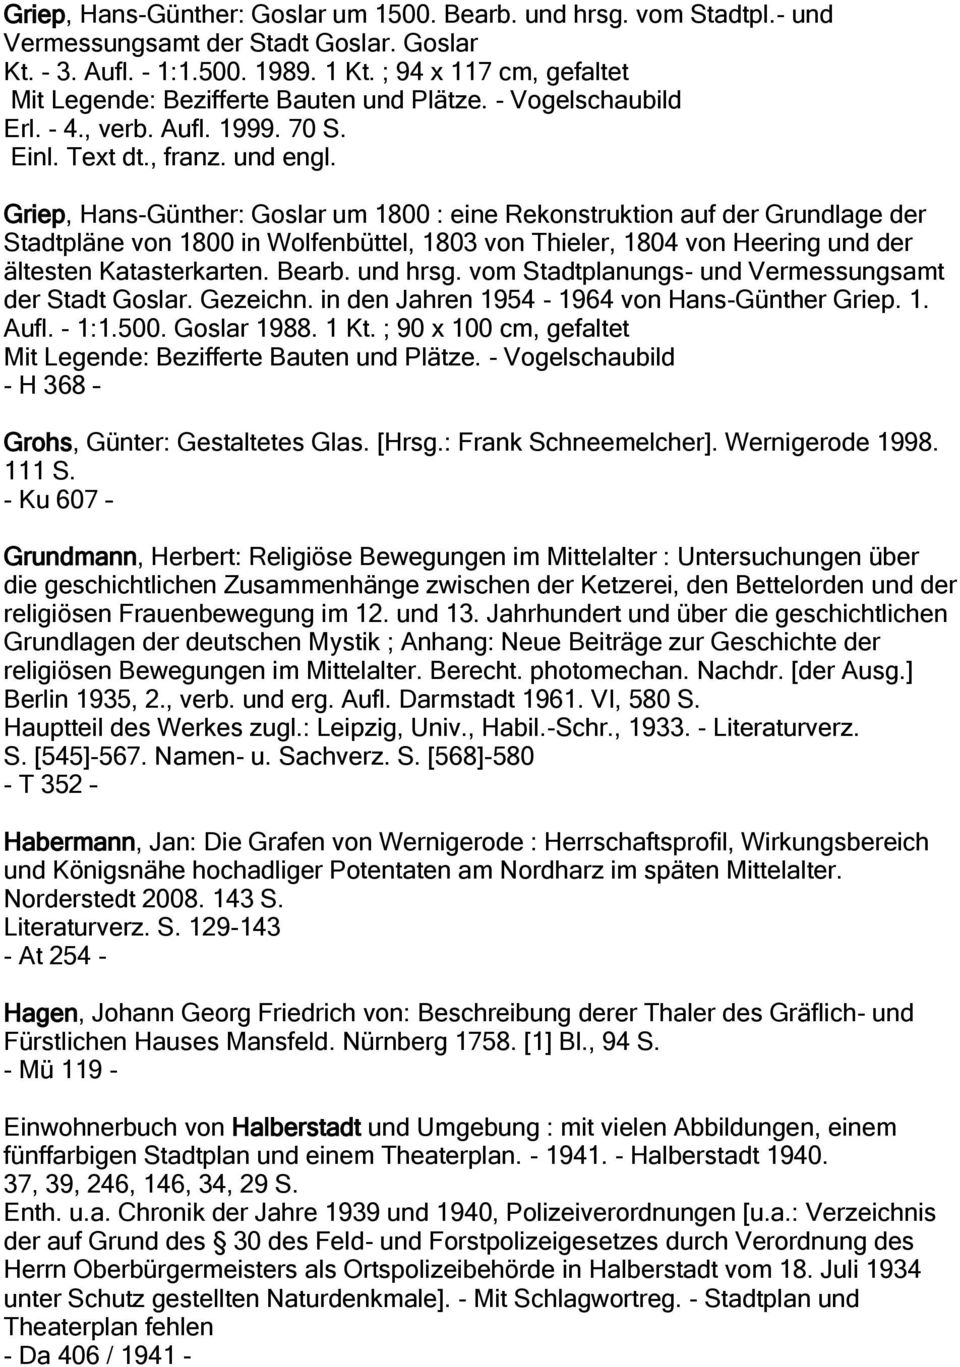 Griep, Hans-Günther: Goslar um 1800 : eine Rekonstruktion auf der Grundlage der Stadtpläne von 1800 in Wolfenbüttel, 1803 von Thieler, 1804 von Heering und der ältesten Katasterkarten. Bearb.